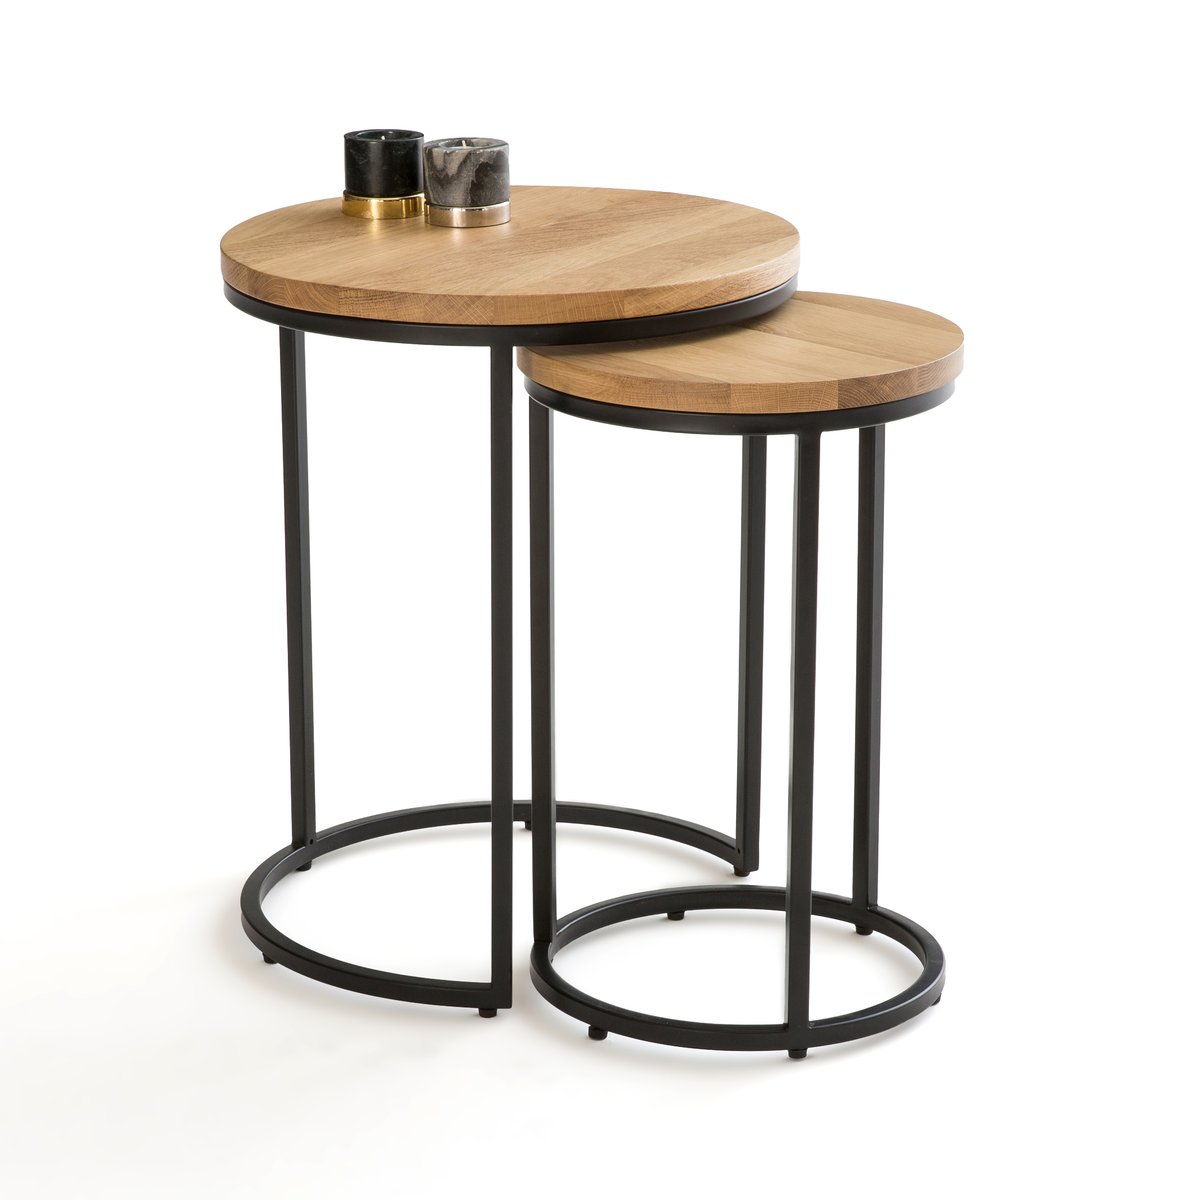 Круглый придиванный столик двойной комплект Vova единый размер каштановый столик круглый ulupna единый размер золотистый